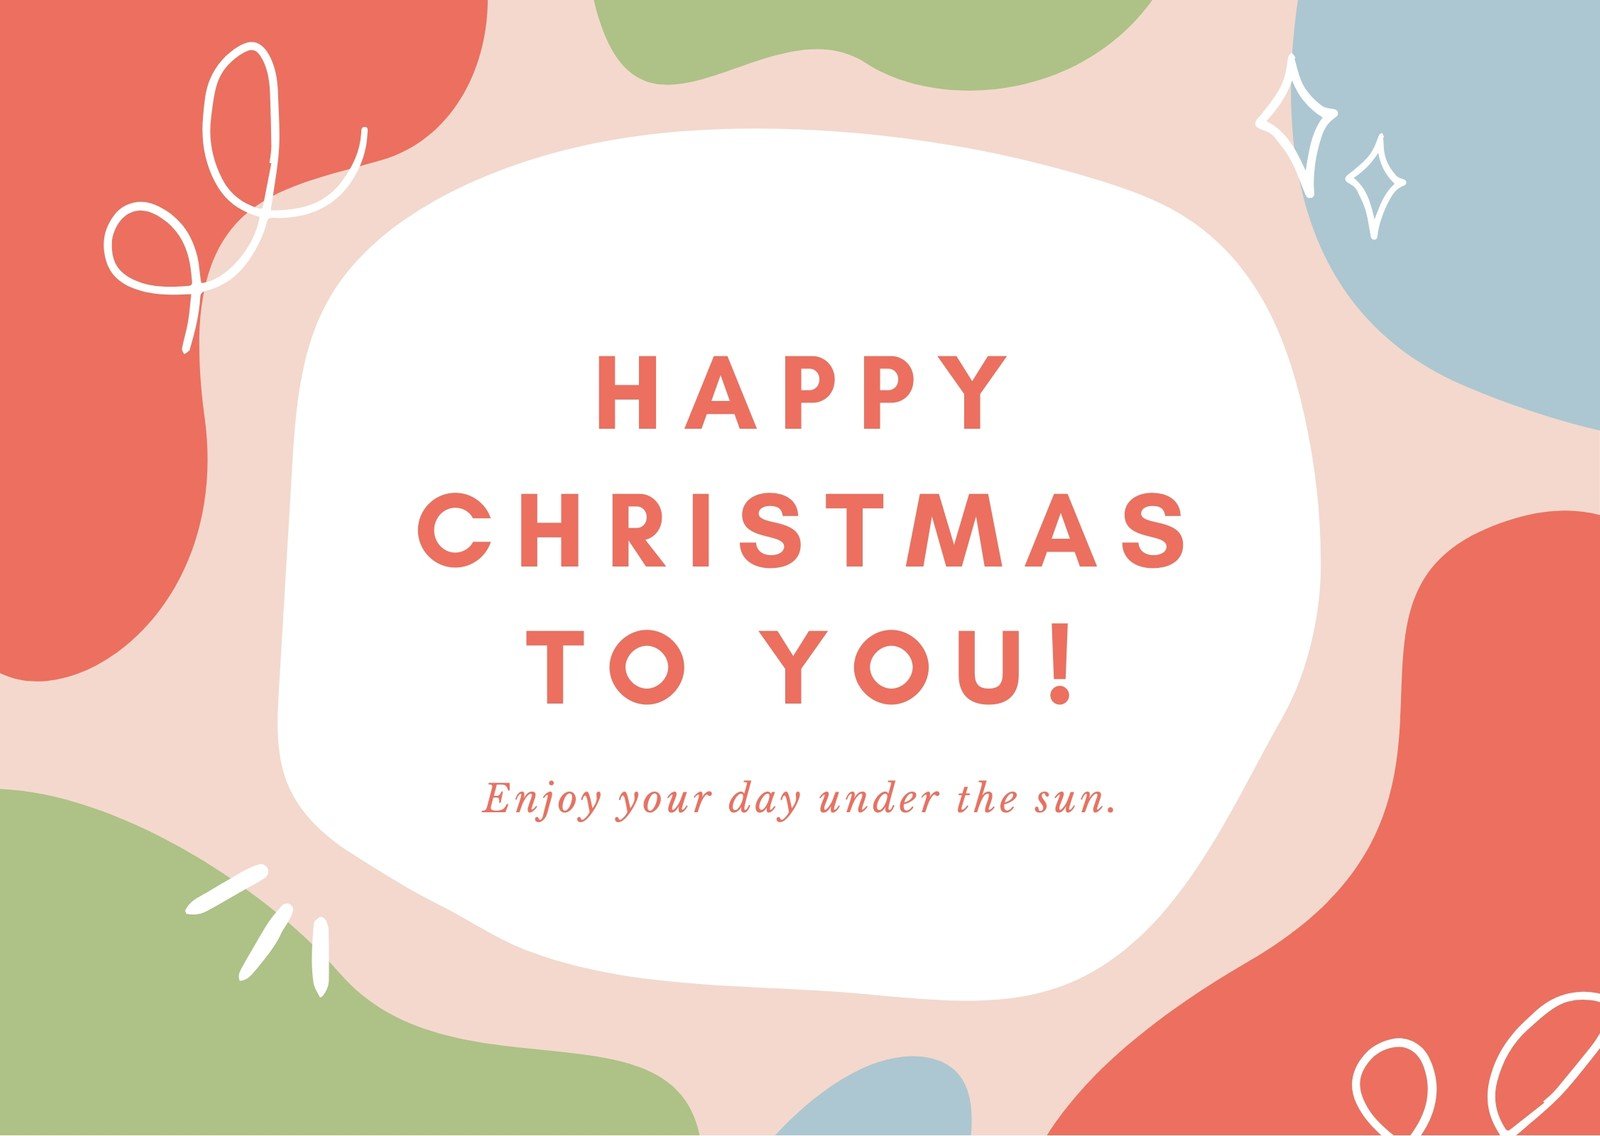 Free custom printable Christmas thank you card templates  Canva Within Christmas Thank You Card Templates Free